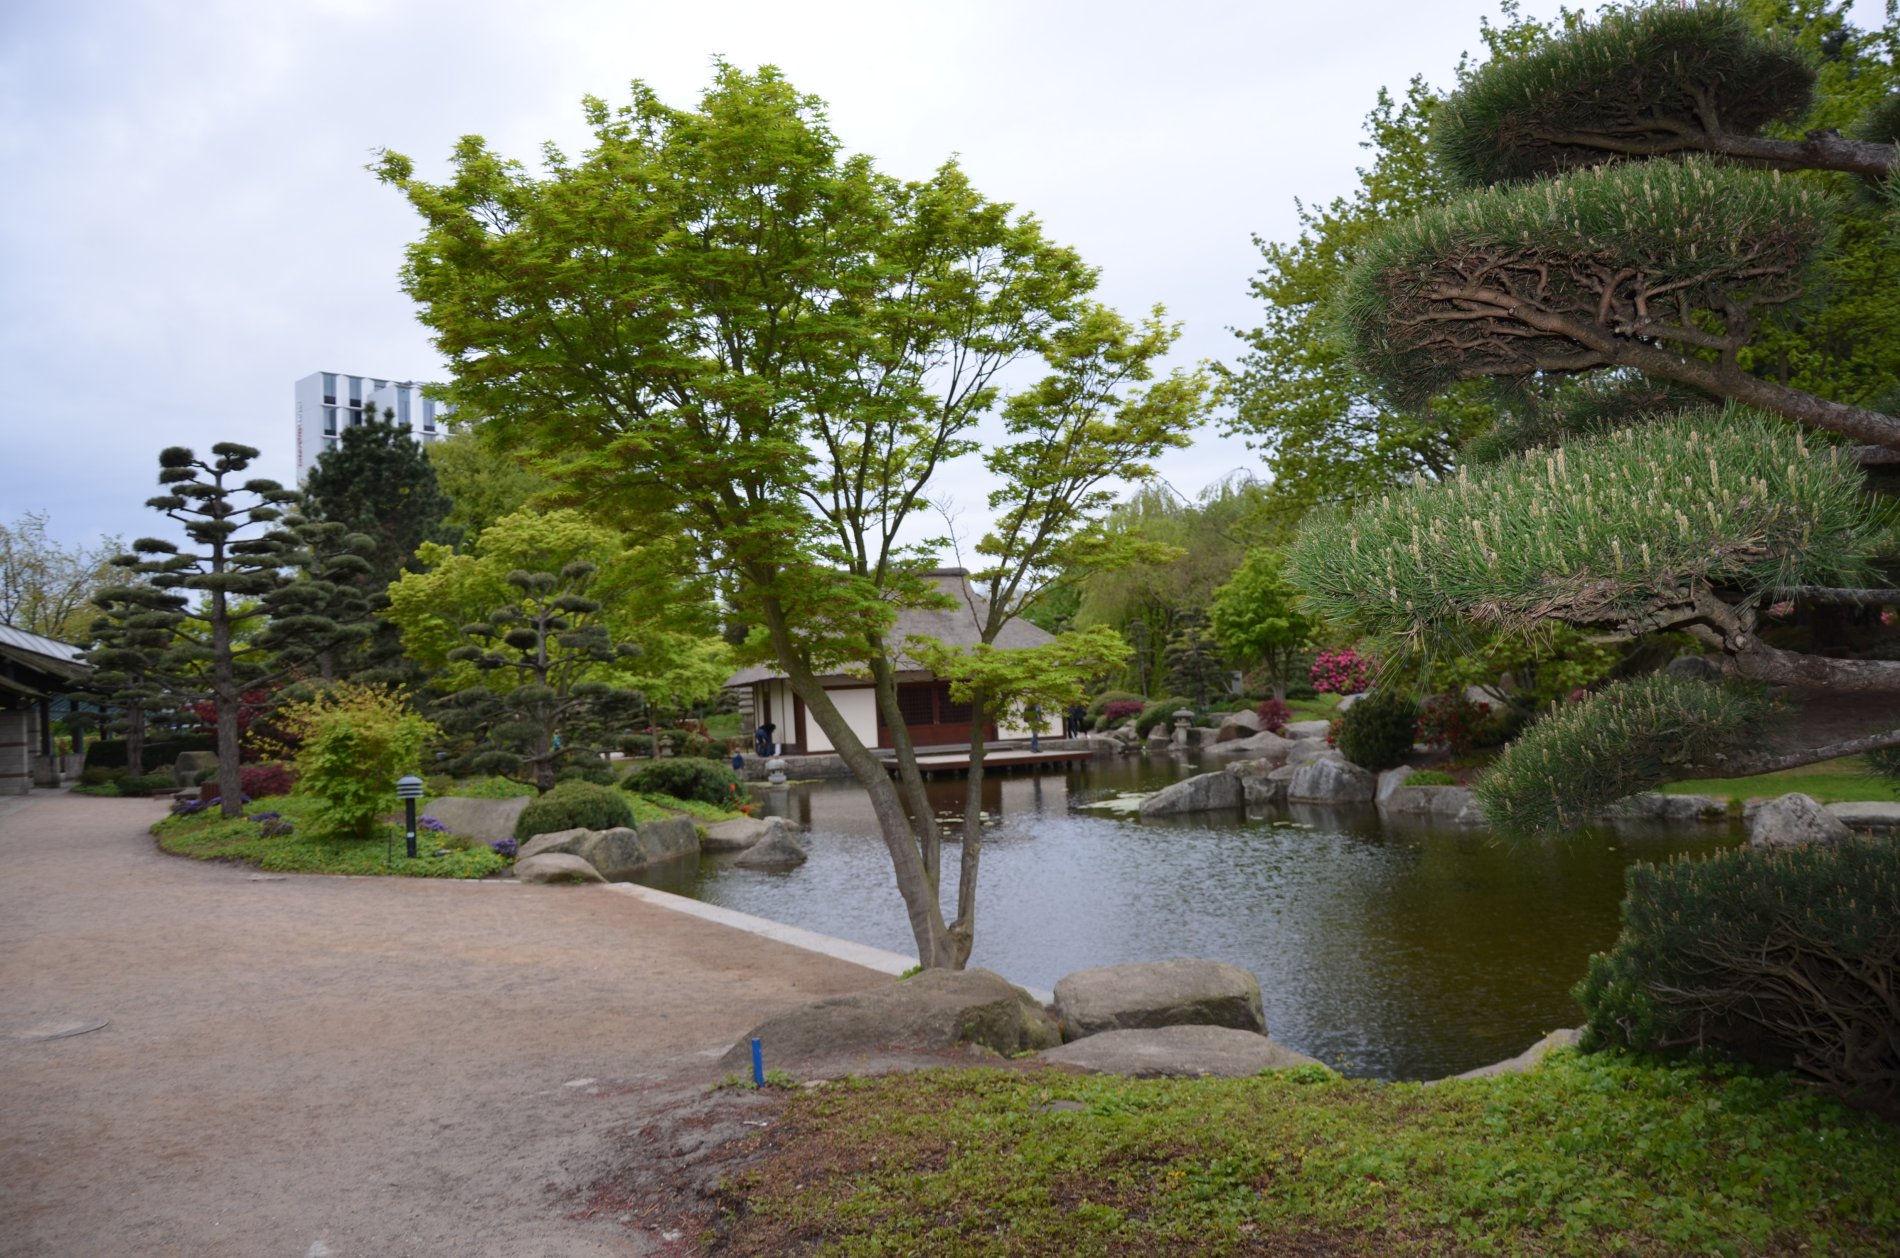 Das Teehaus im Japanischen Garten, der Bestandteil des Parks Planten und Blomen ist.